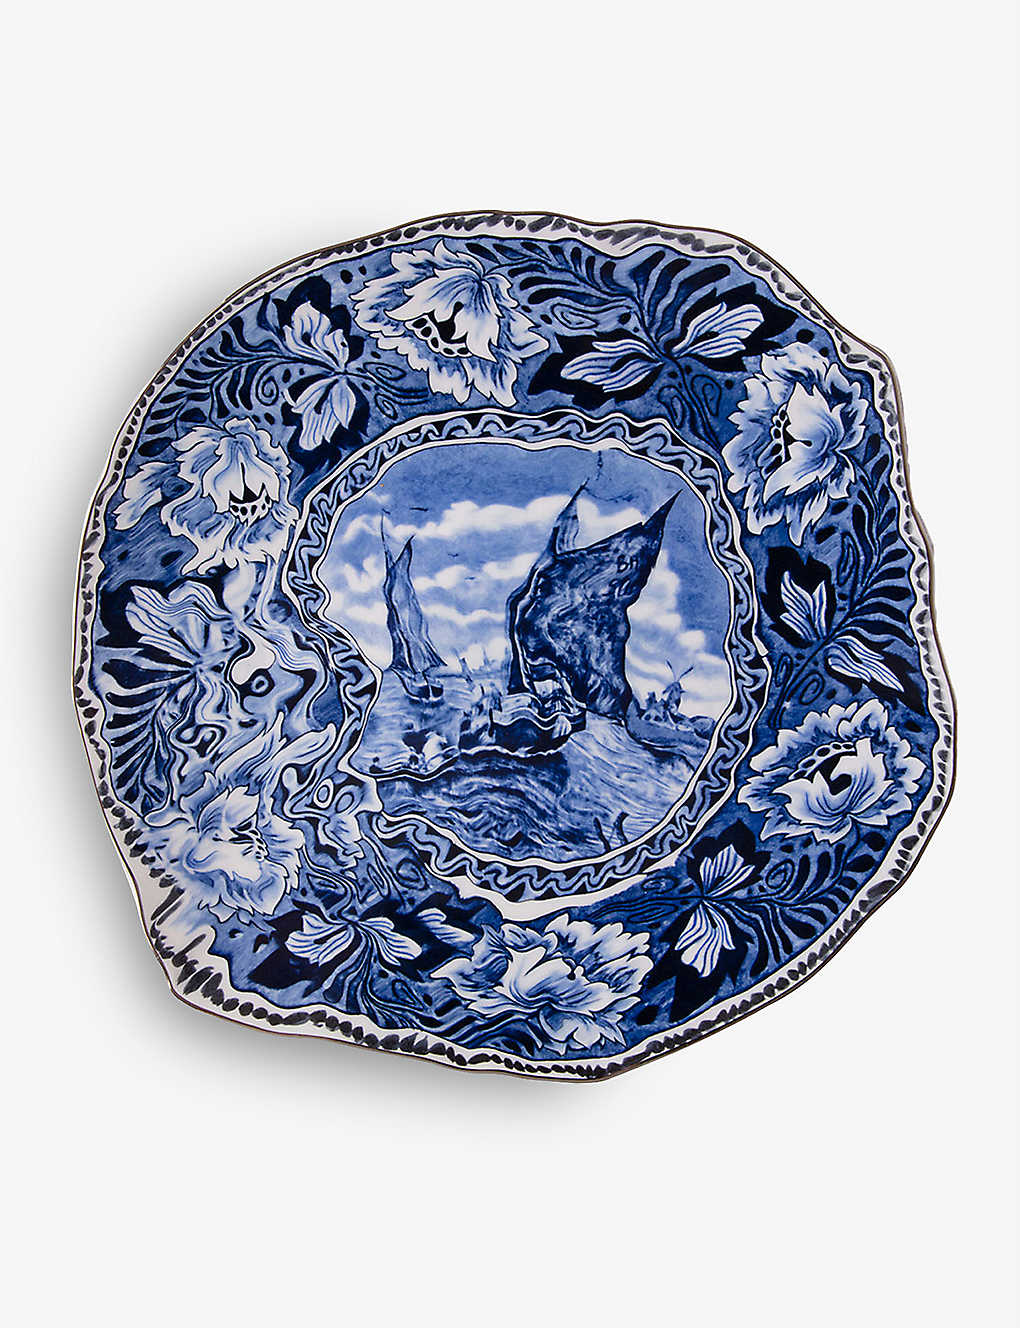 Seletti X Diesel Living Classics On Acid Maastricht Ship Porcelain Dinner Plate 28cm